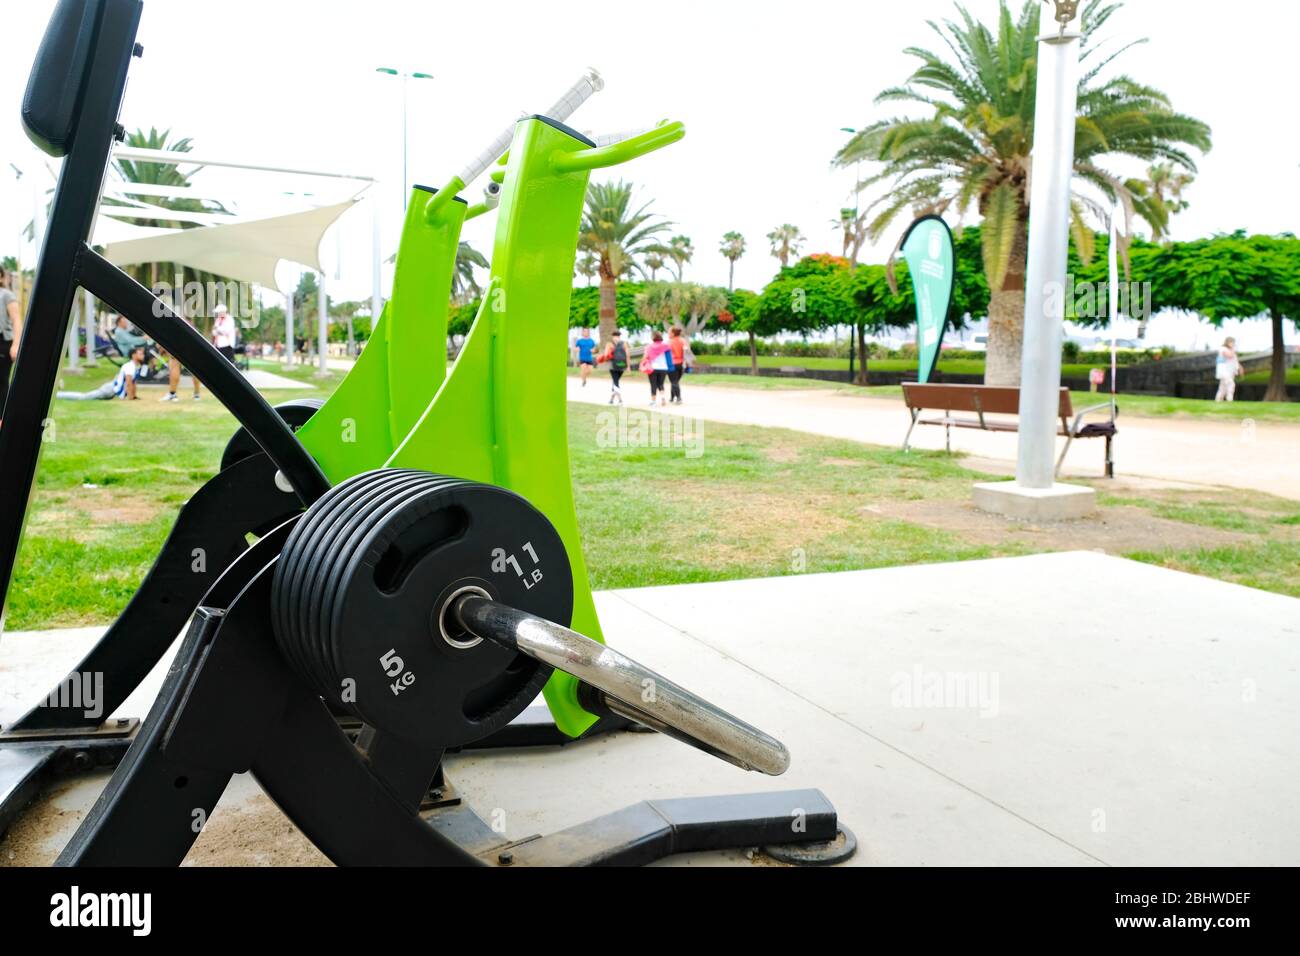 Máquinas de entrenamiento de fitness públicas (gimnasio público) en el parque de la ciudad. Foto de stock